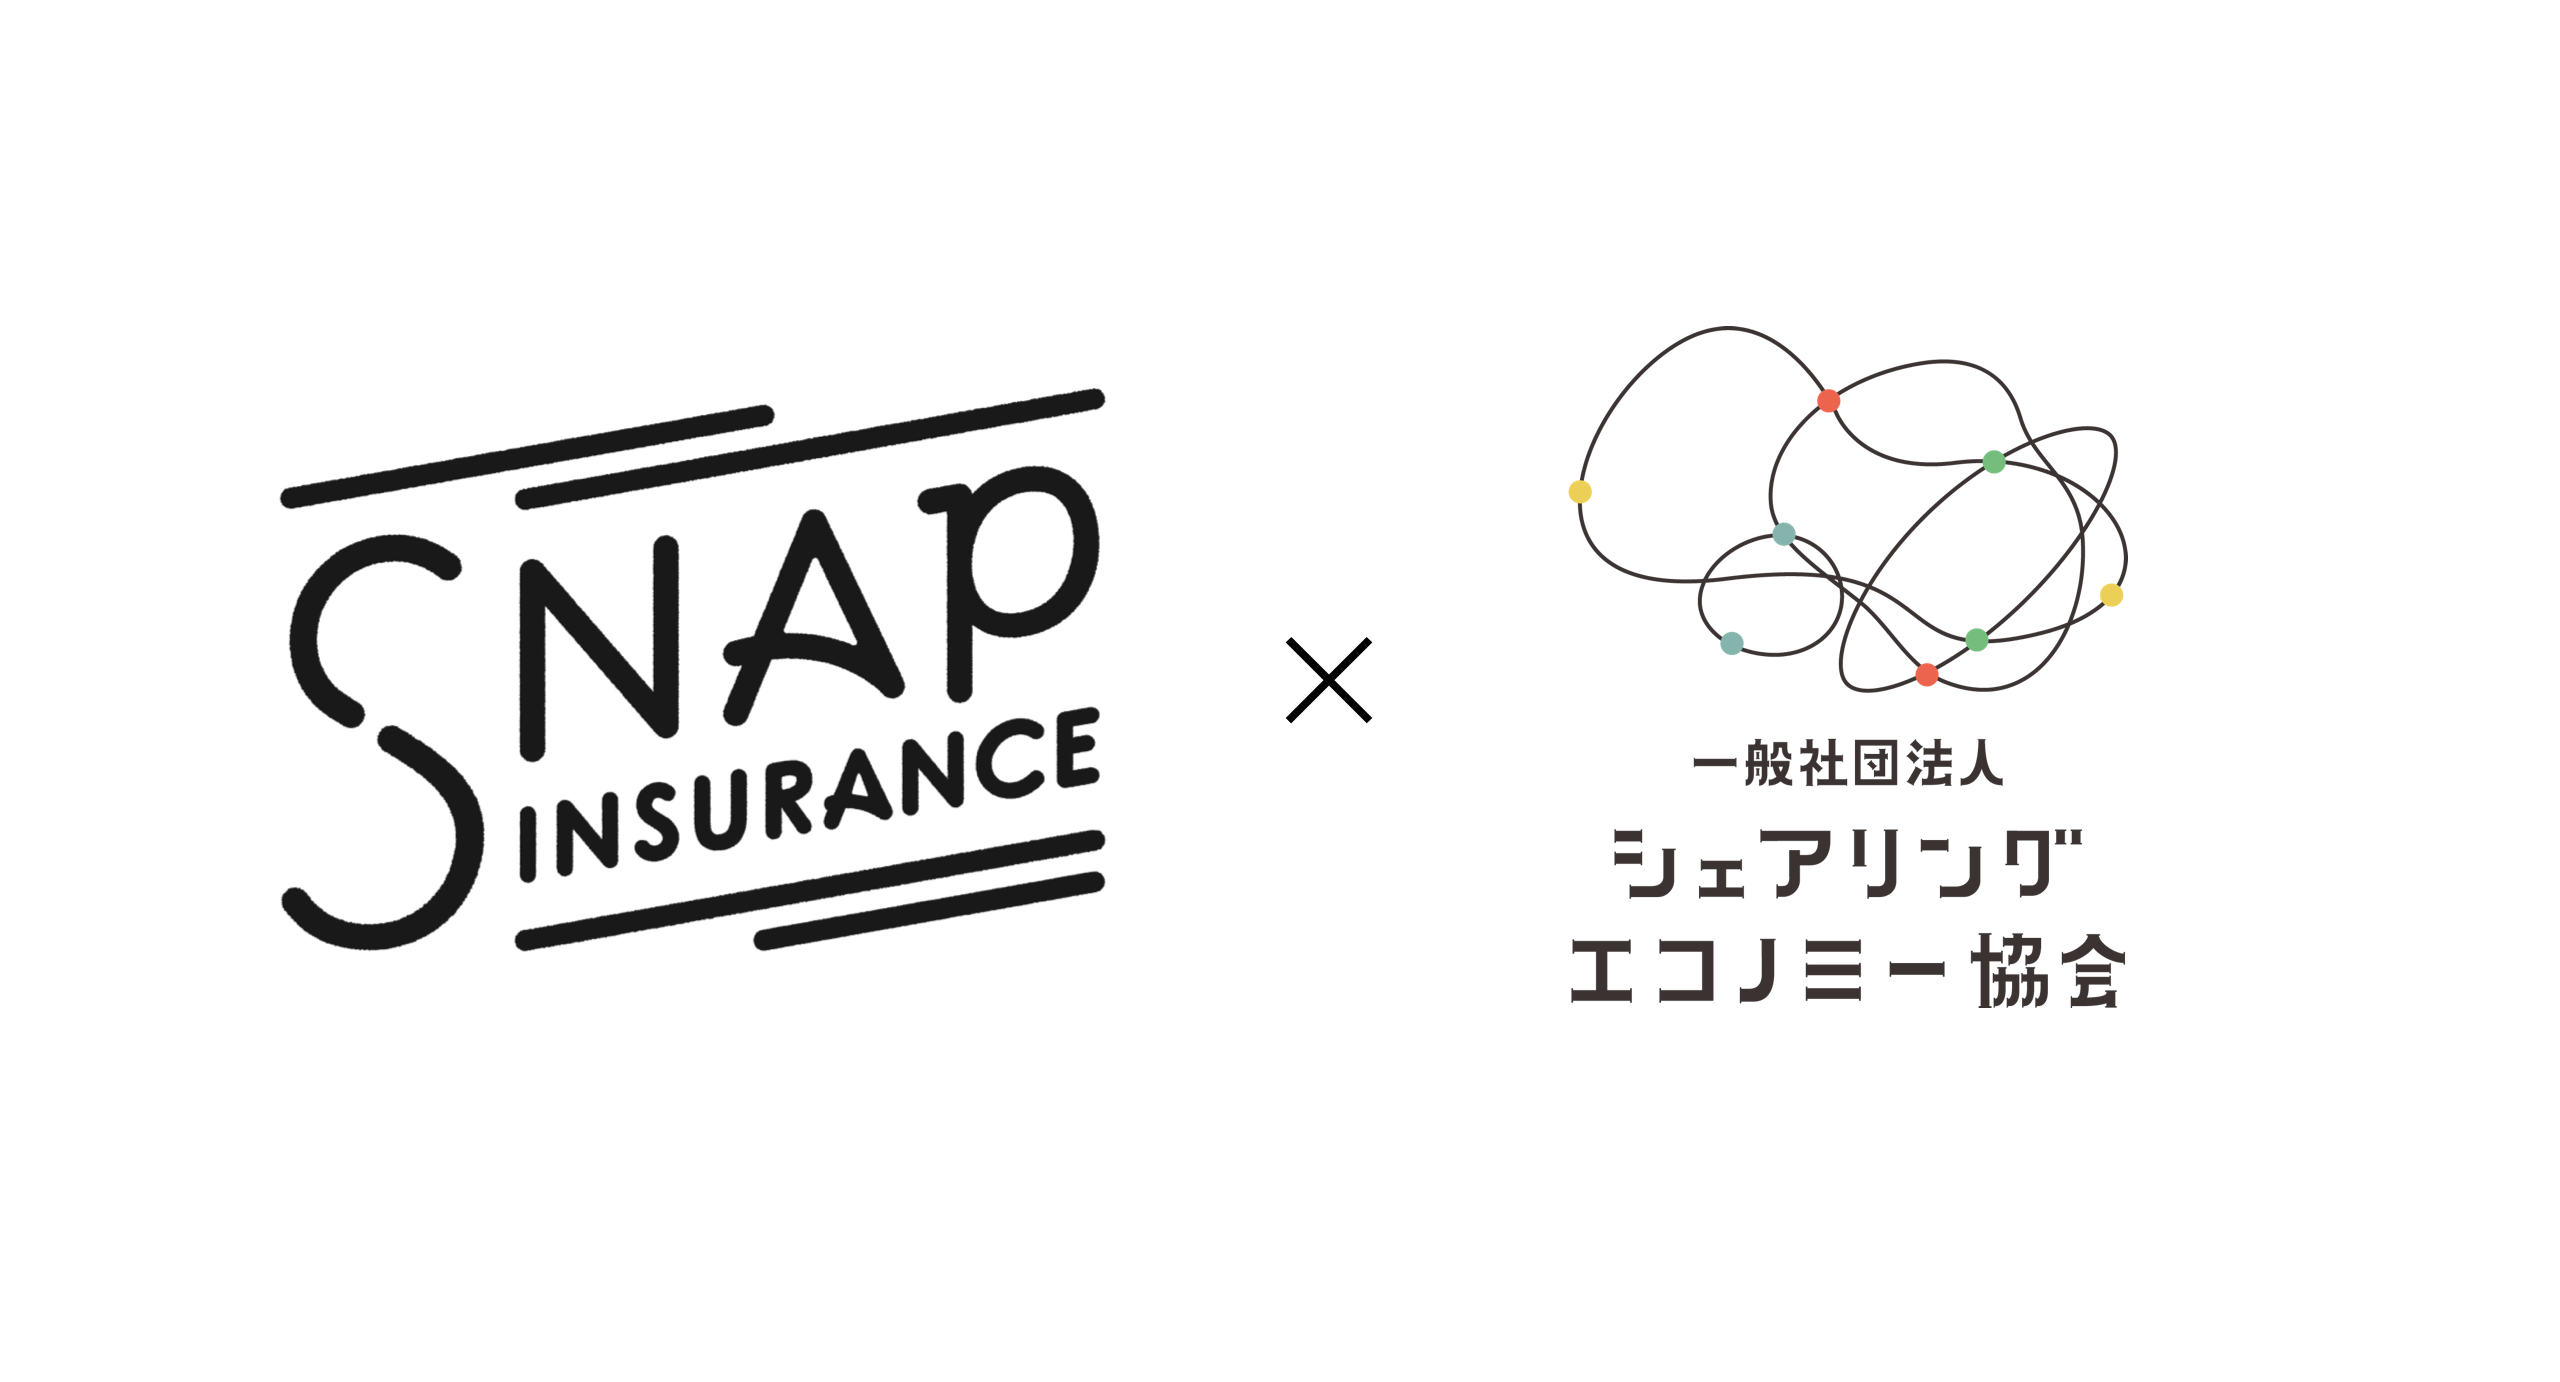 シェアリングエコノミー協会も連携。第一生命が提供する 1日から入れるレジャー保険「Snap Insurance」